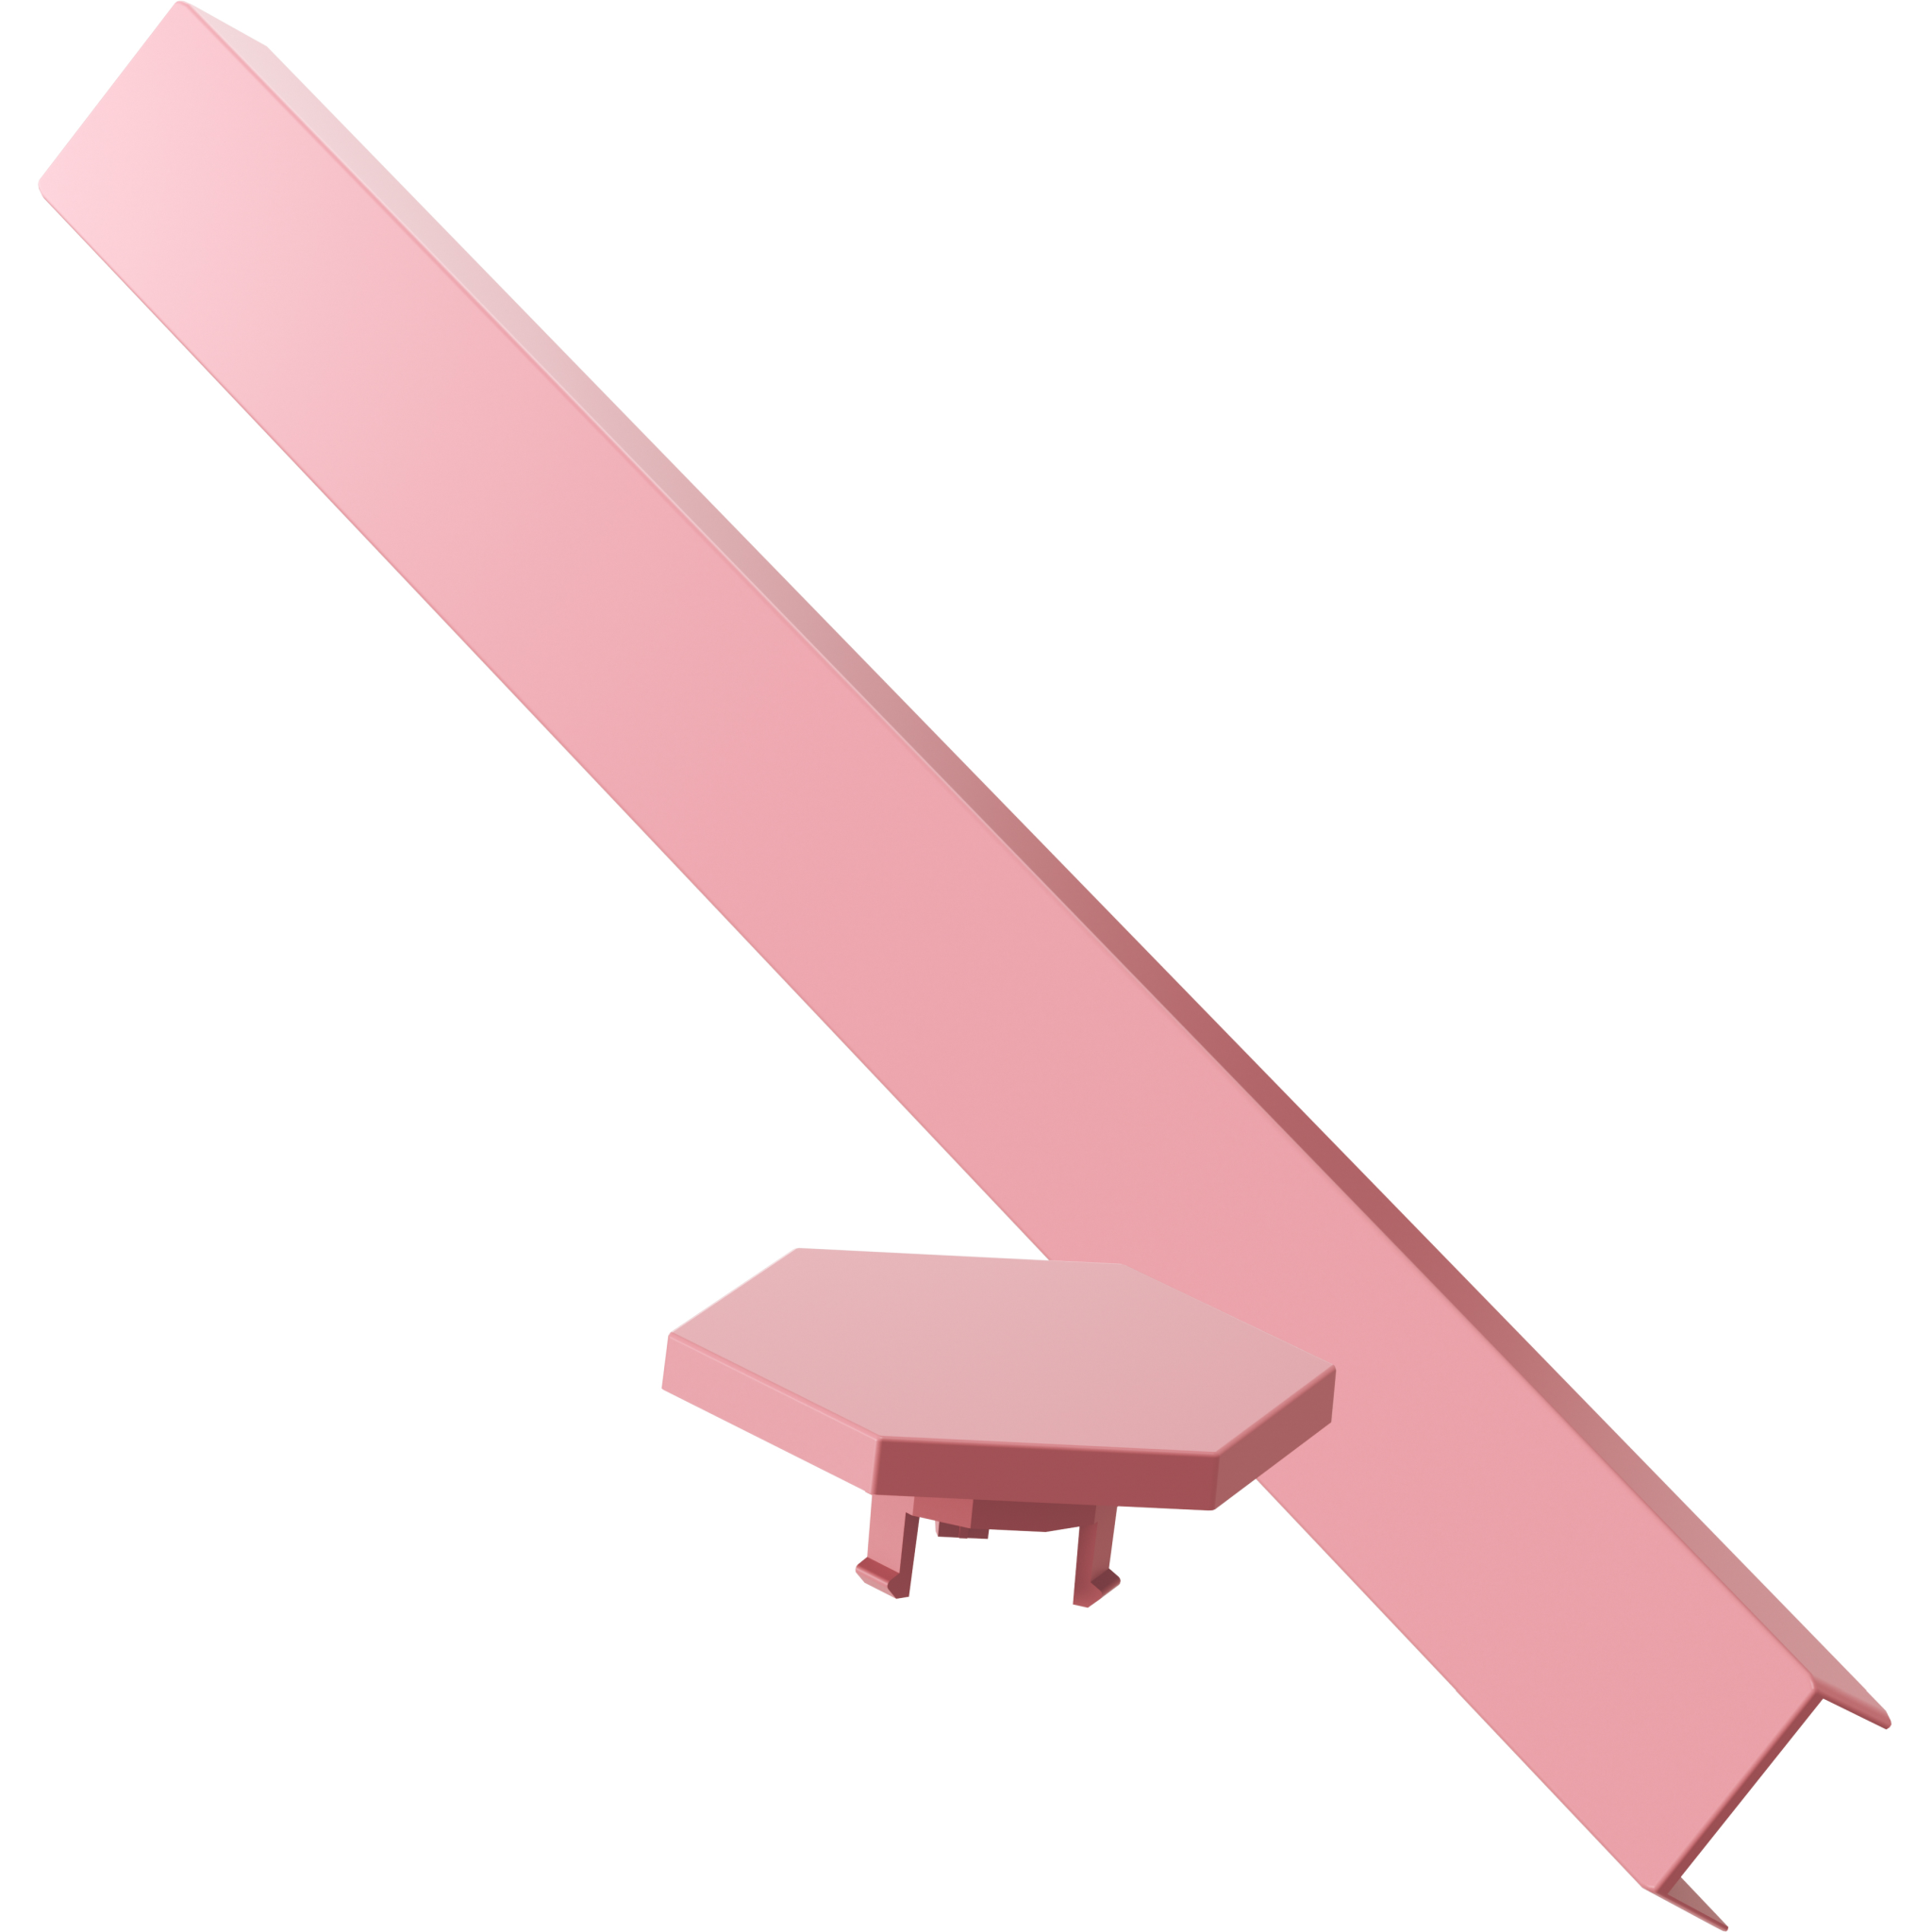 4897105330547 Nanoleaf Lines Skin Pink Matte 9pcs Hus & Have,Smart Home,Smart belysning 15600003030 NL59-0001PM-9PK